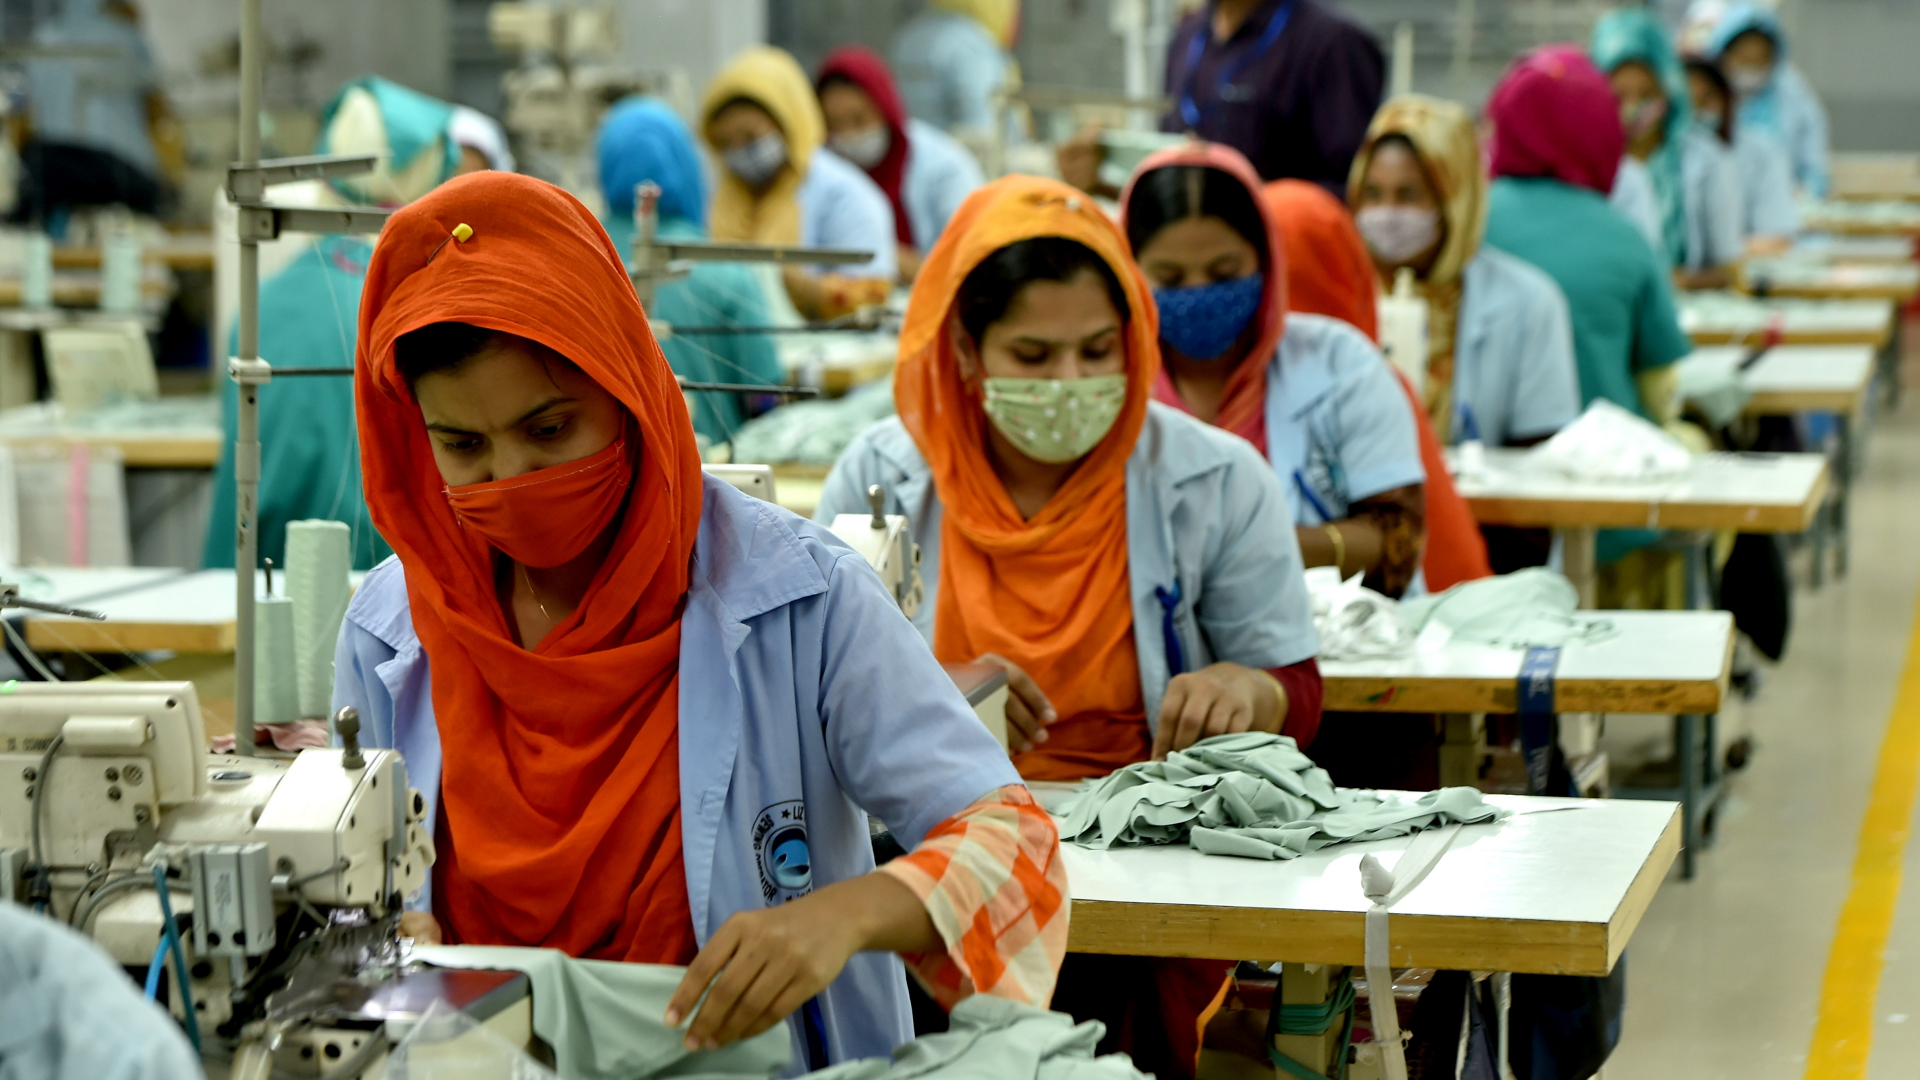 Näherinnen in einer Farbrik in Gazipur, Bangladesch | dpa